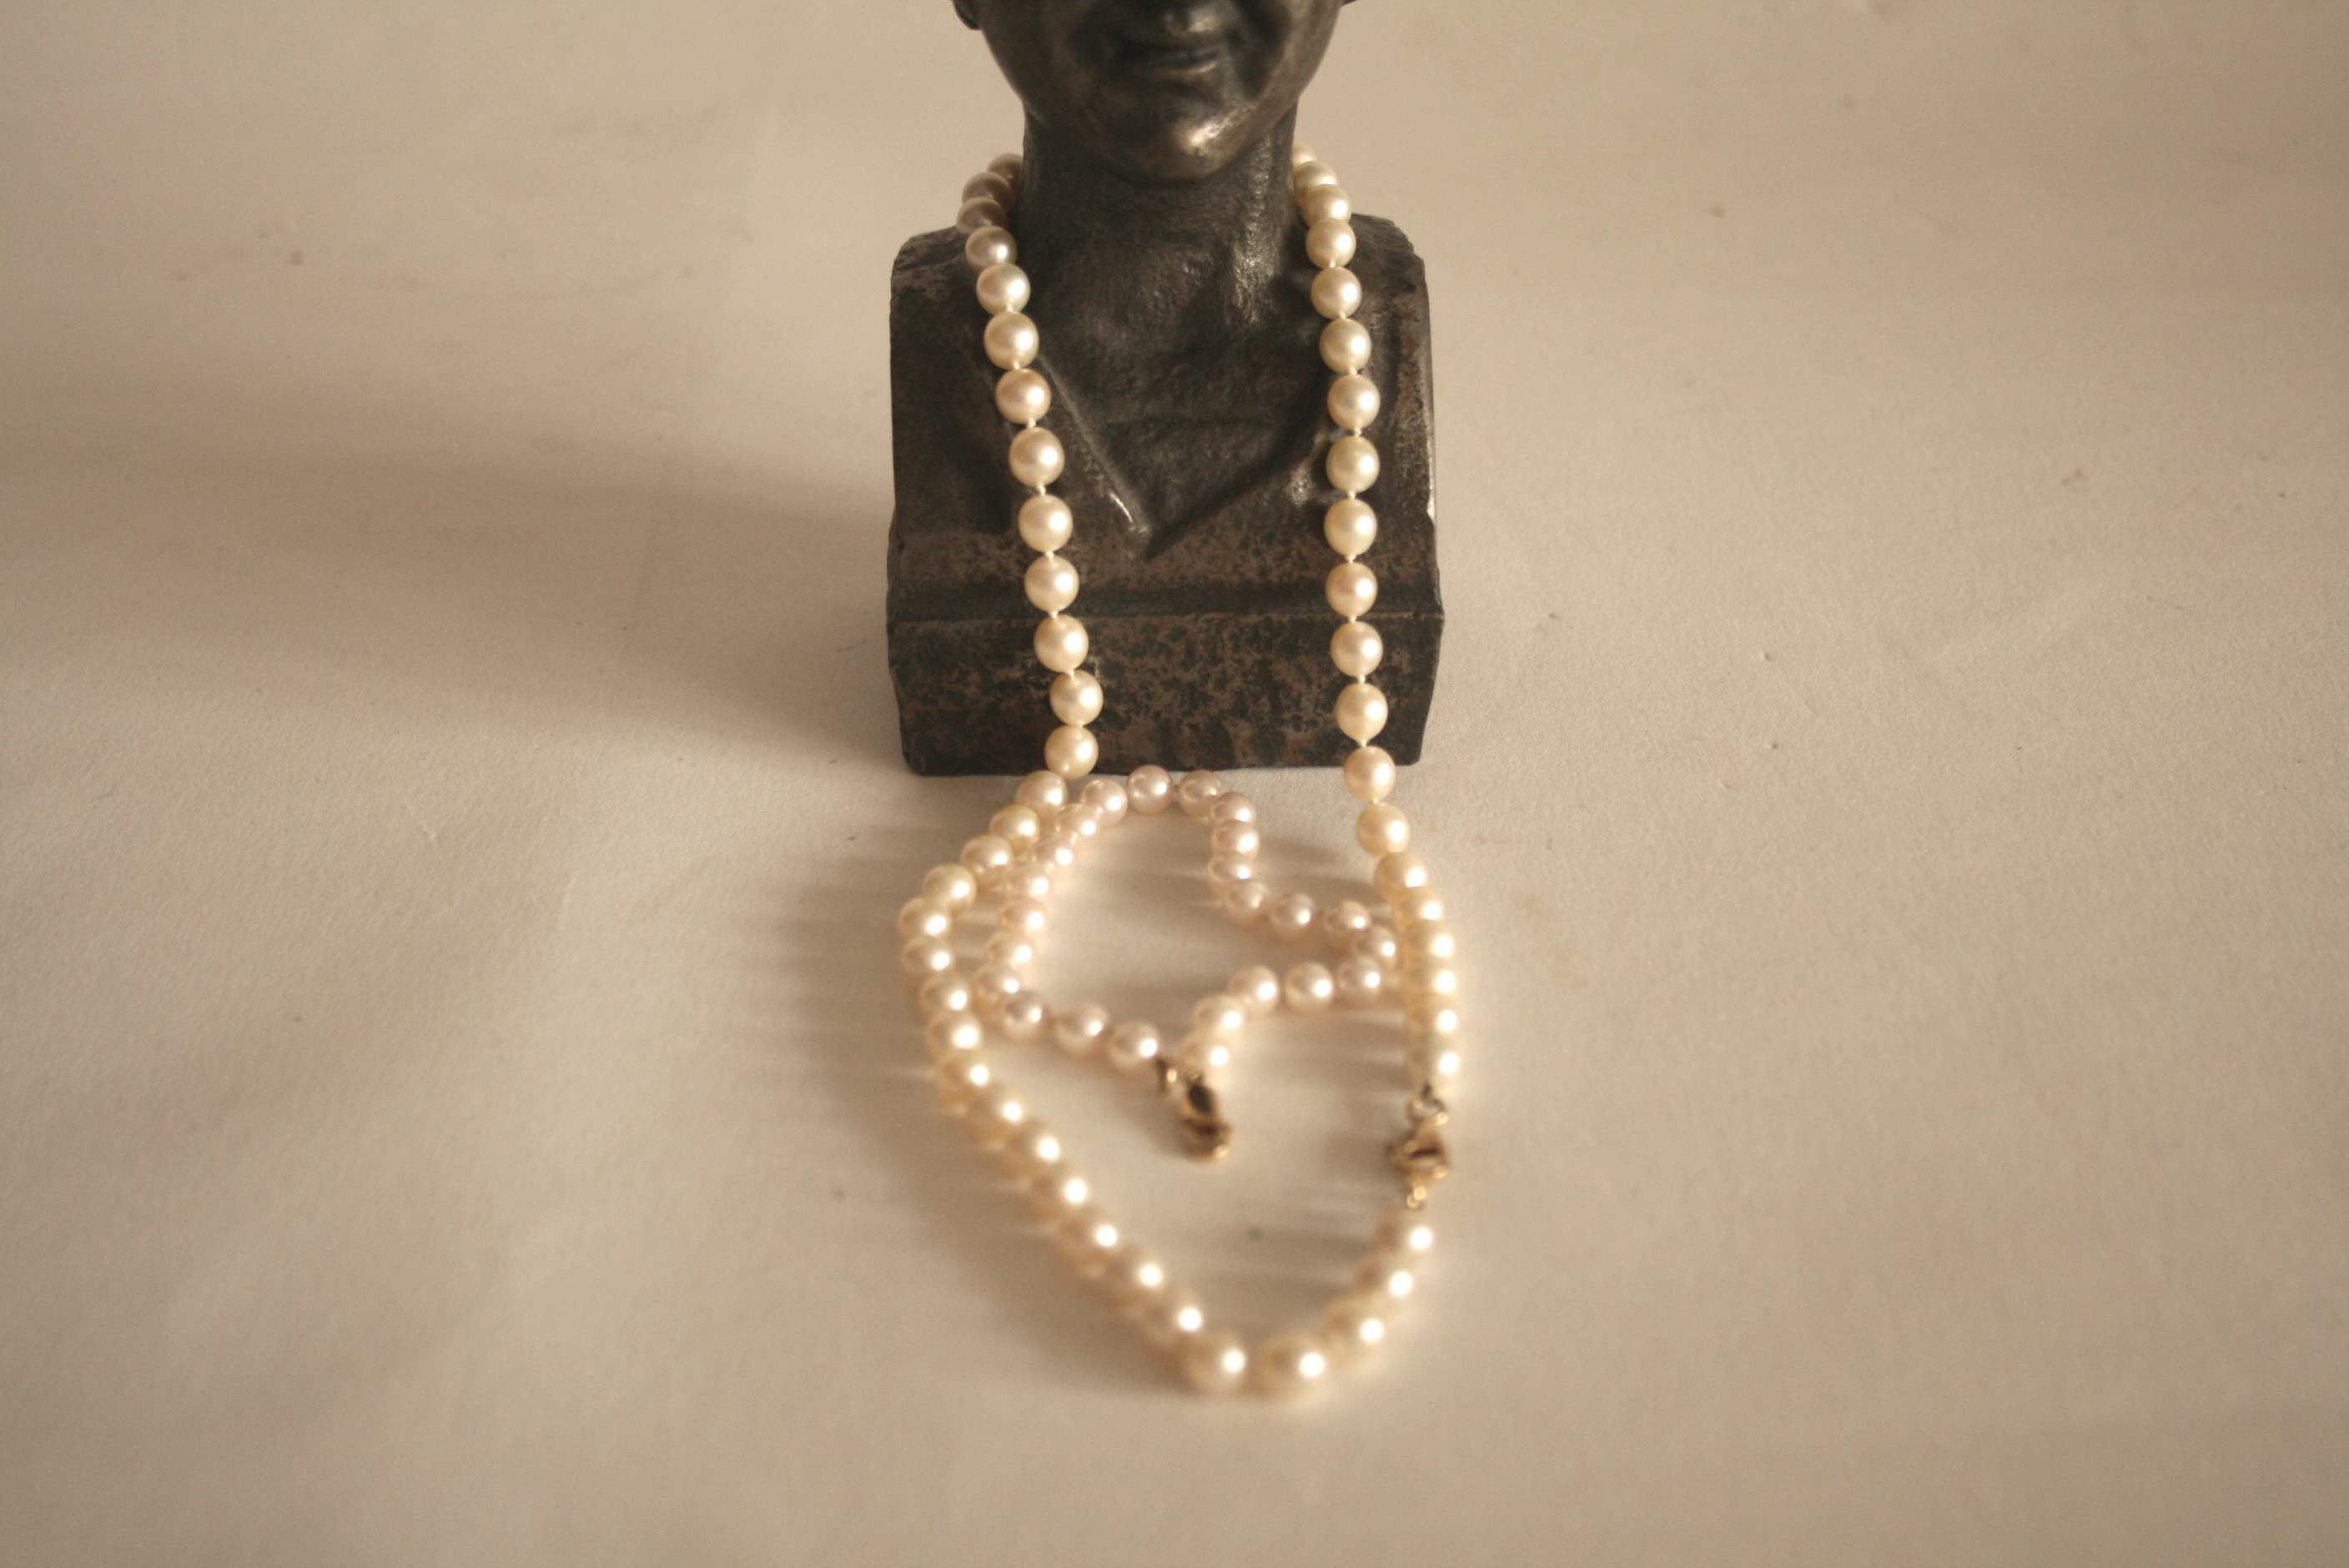 Collier et bracelet de perles de culture (7 mm & 6 mm), monture en or 750/18 ct - [...] - Image 2 of 2